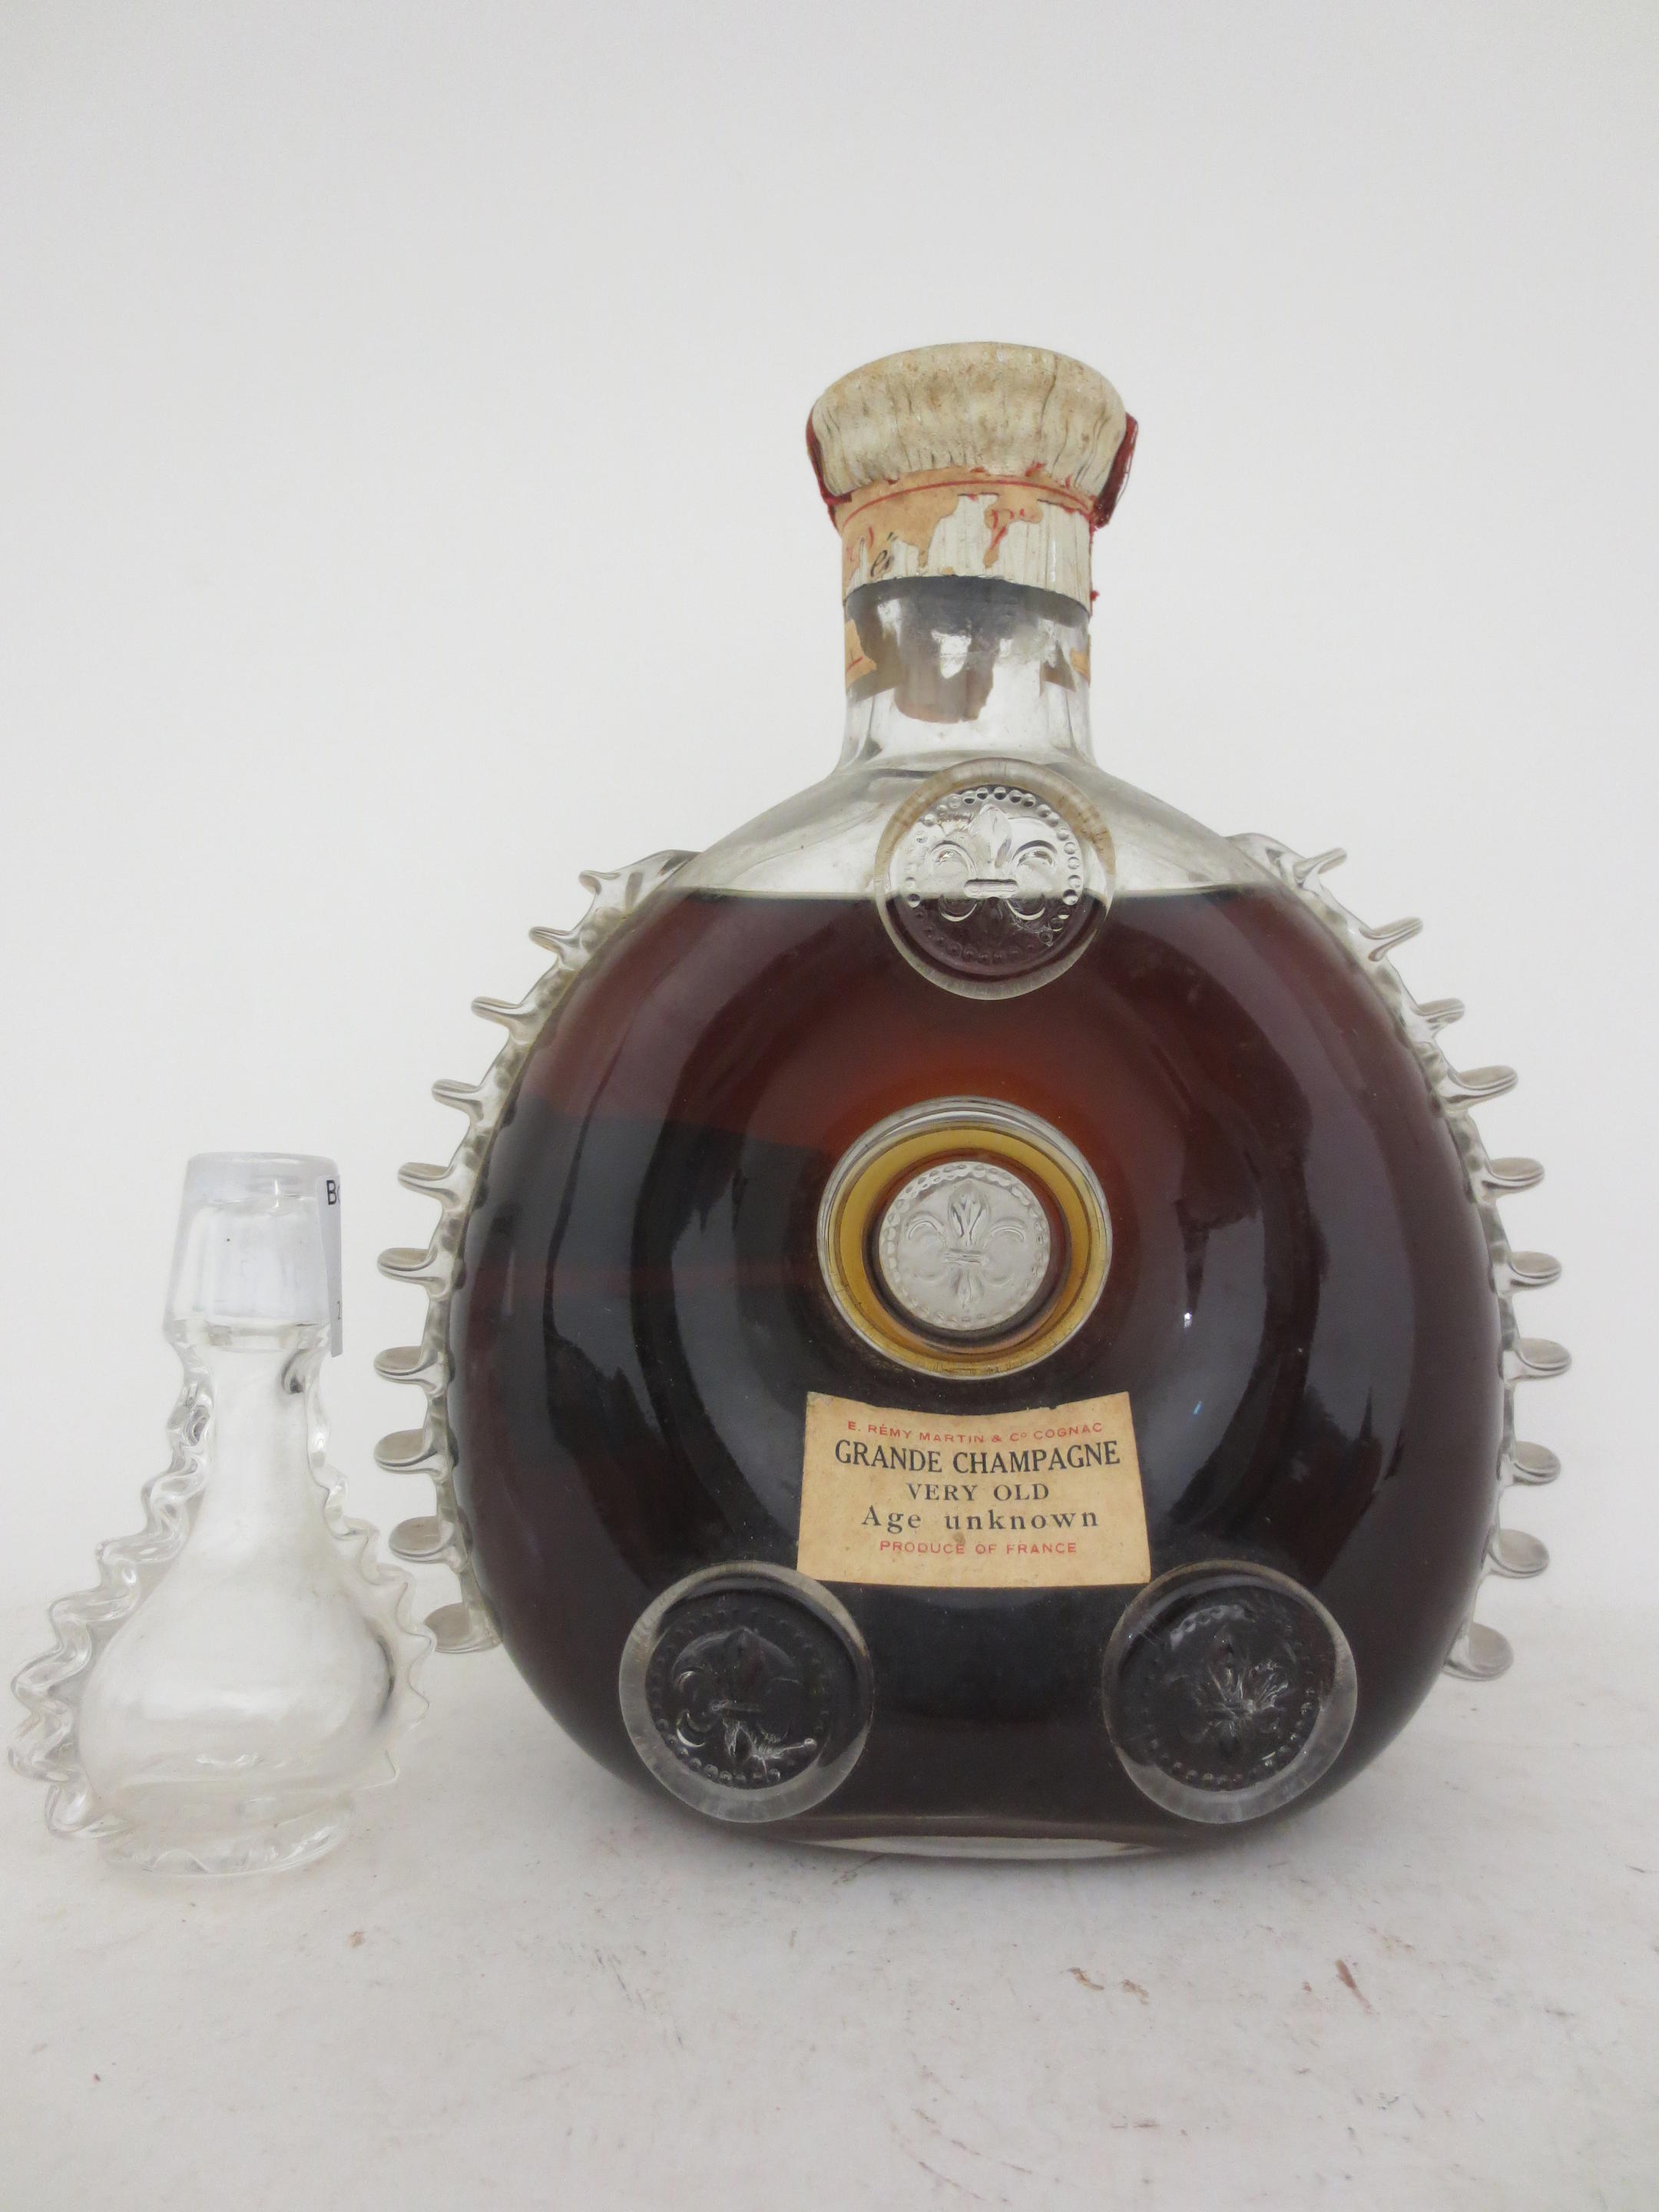 Sold at Auction: Louis XIII de Remy Martin Cognac